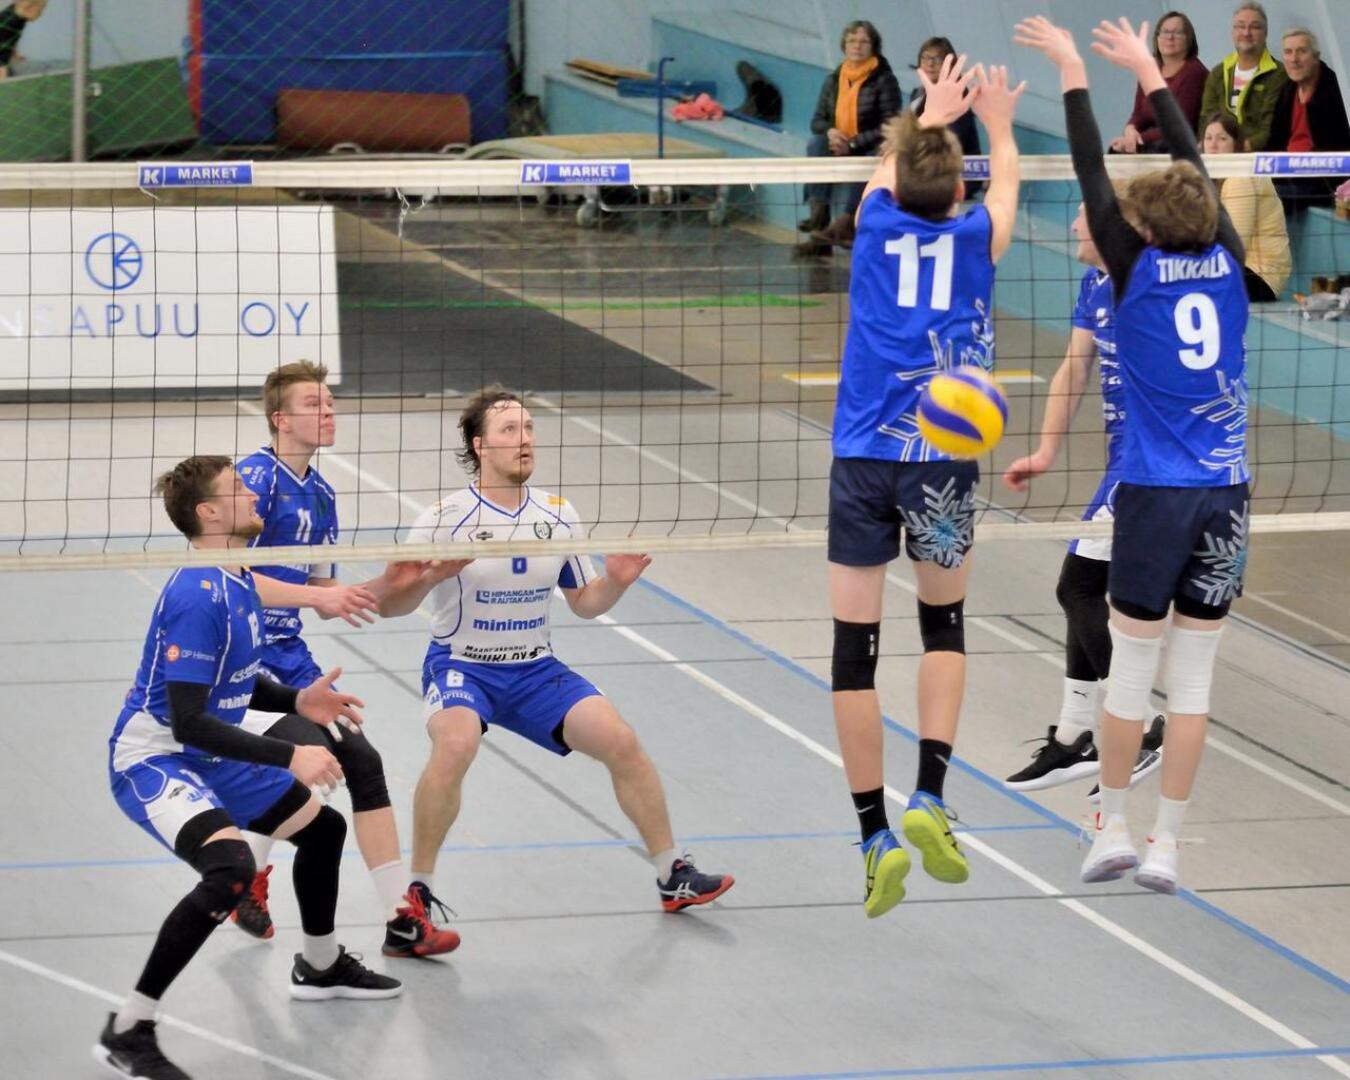 HU kukisti Kuortaneen Urheiluopiston joukkueen, joka koostuu Suomen alle 18-vuotiaiden maajoukkuepelaajista. 